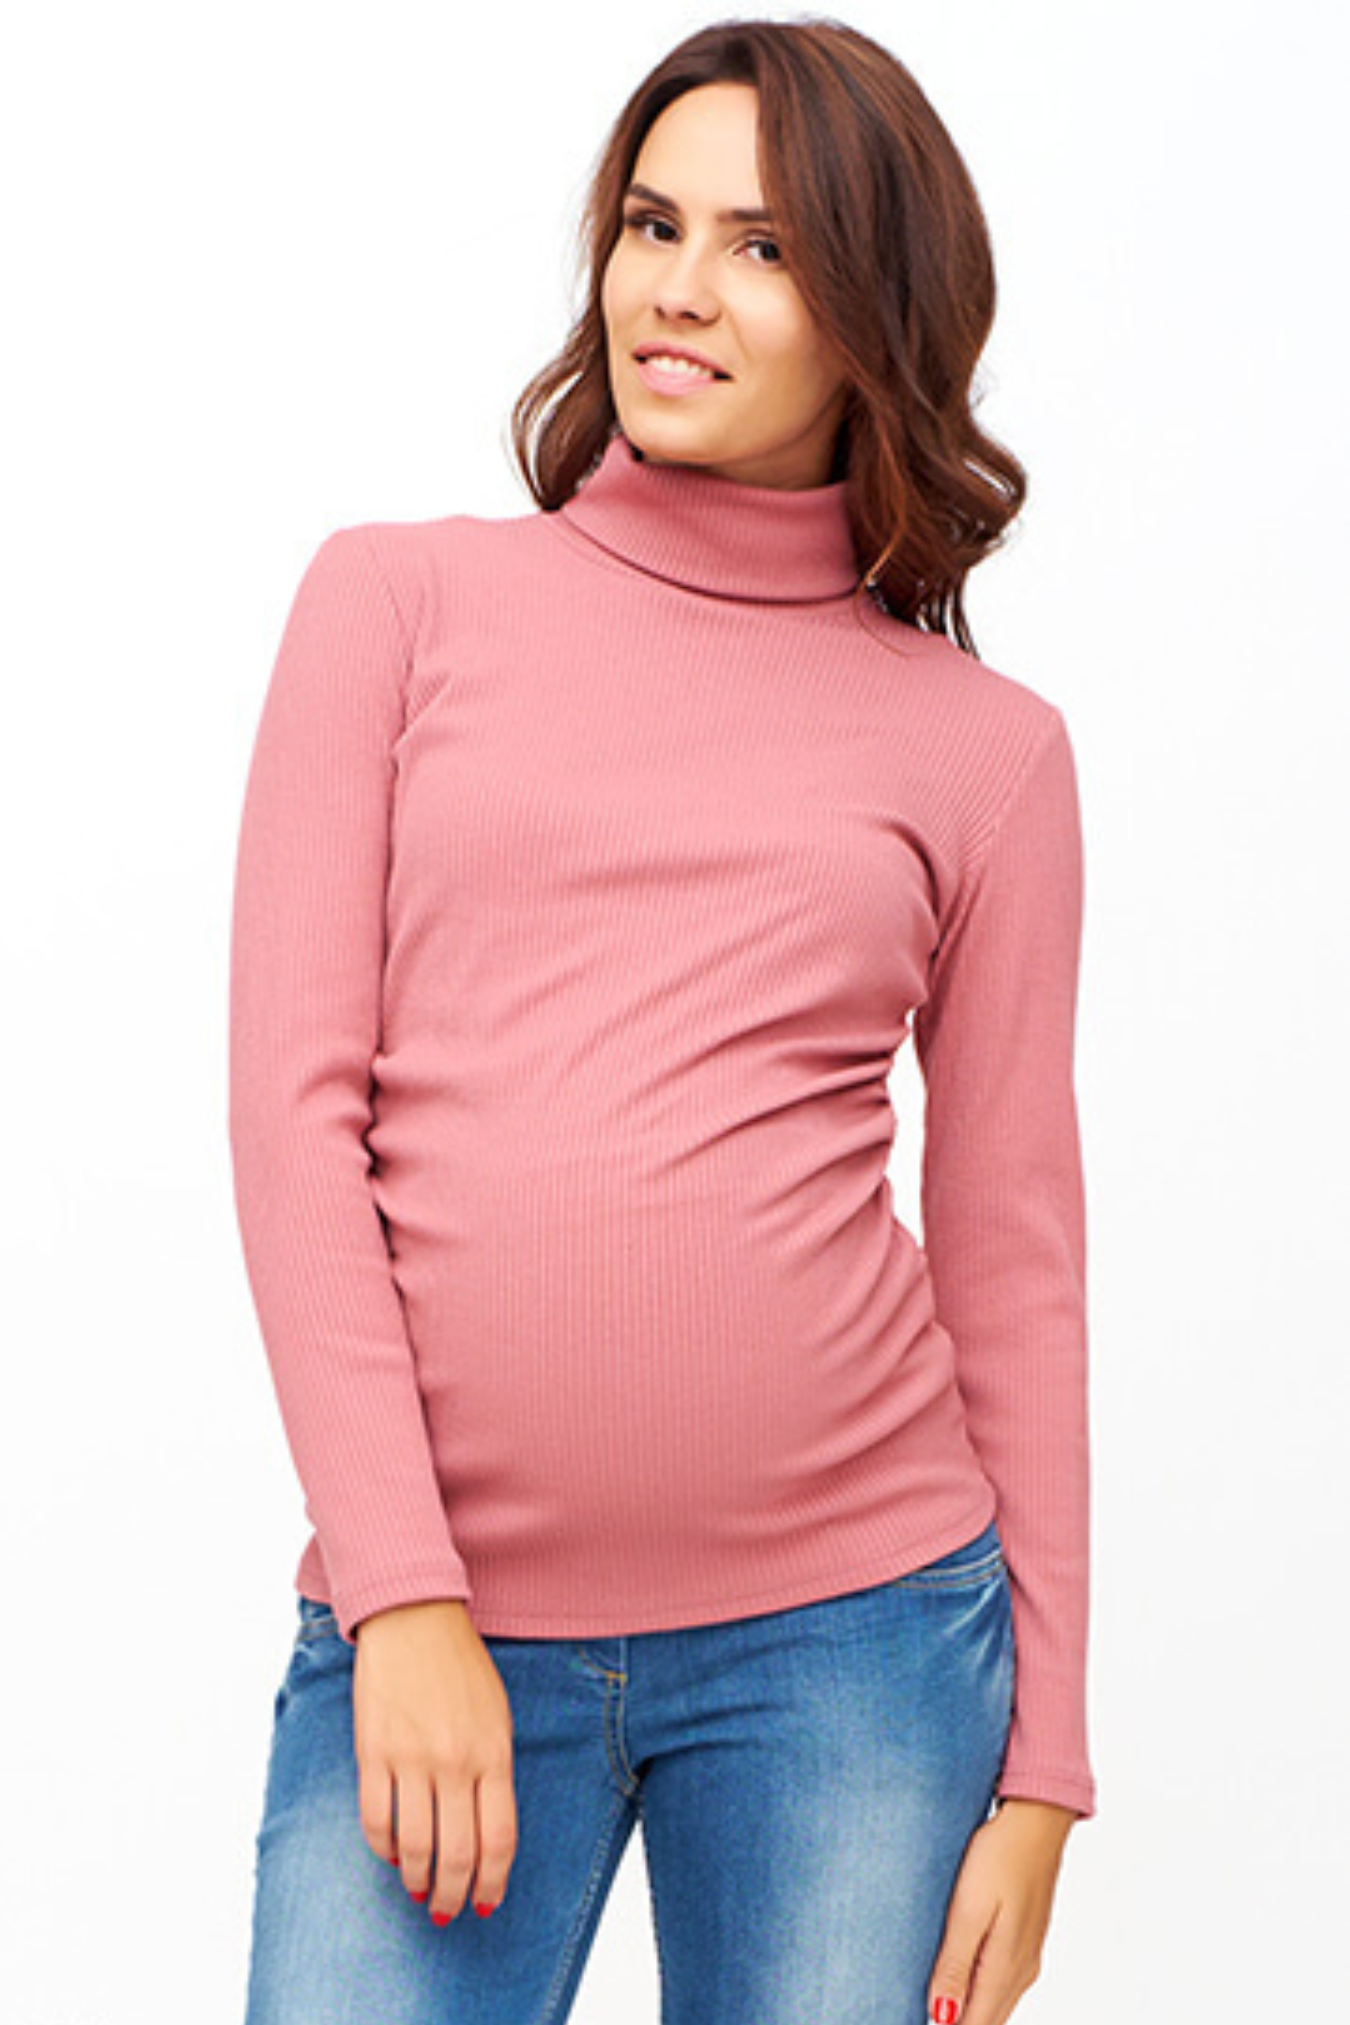 Водолазка для беременных и будущих мам женская повседневная теплая лапша кофта кофточка свитер /  Happy Moms